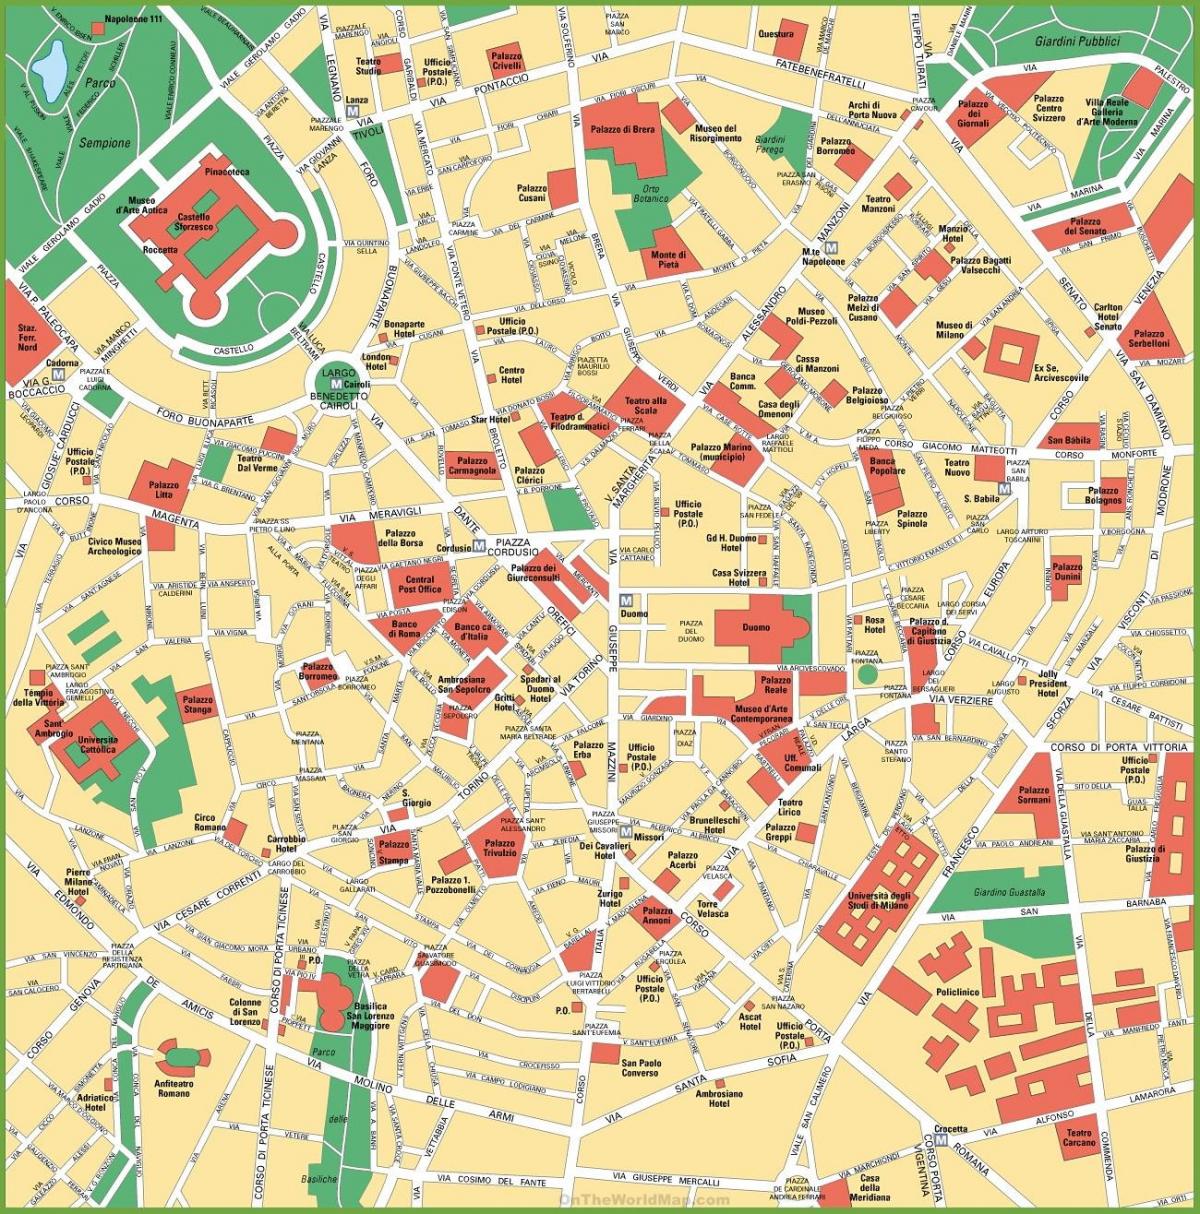 milano city på kartan